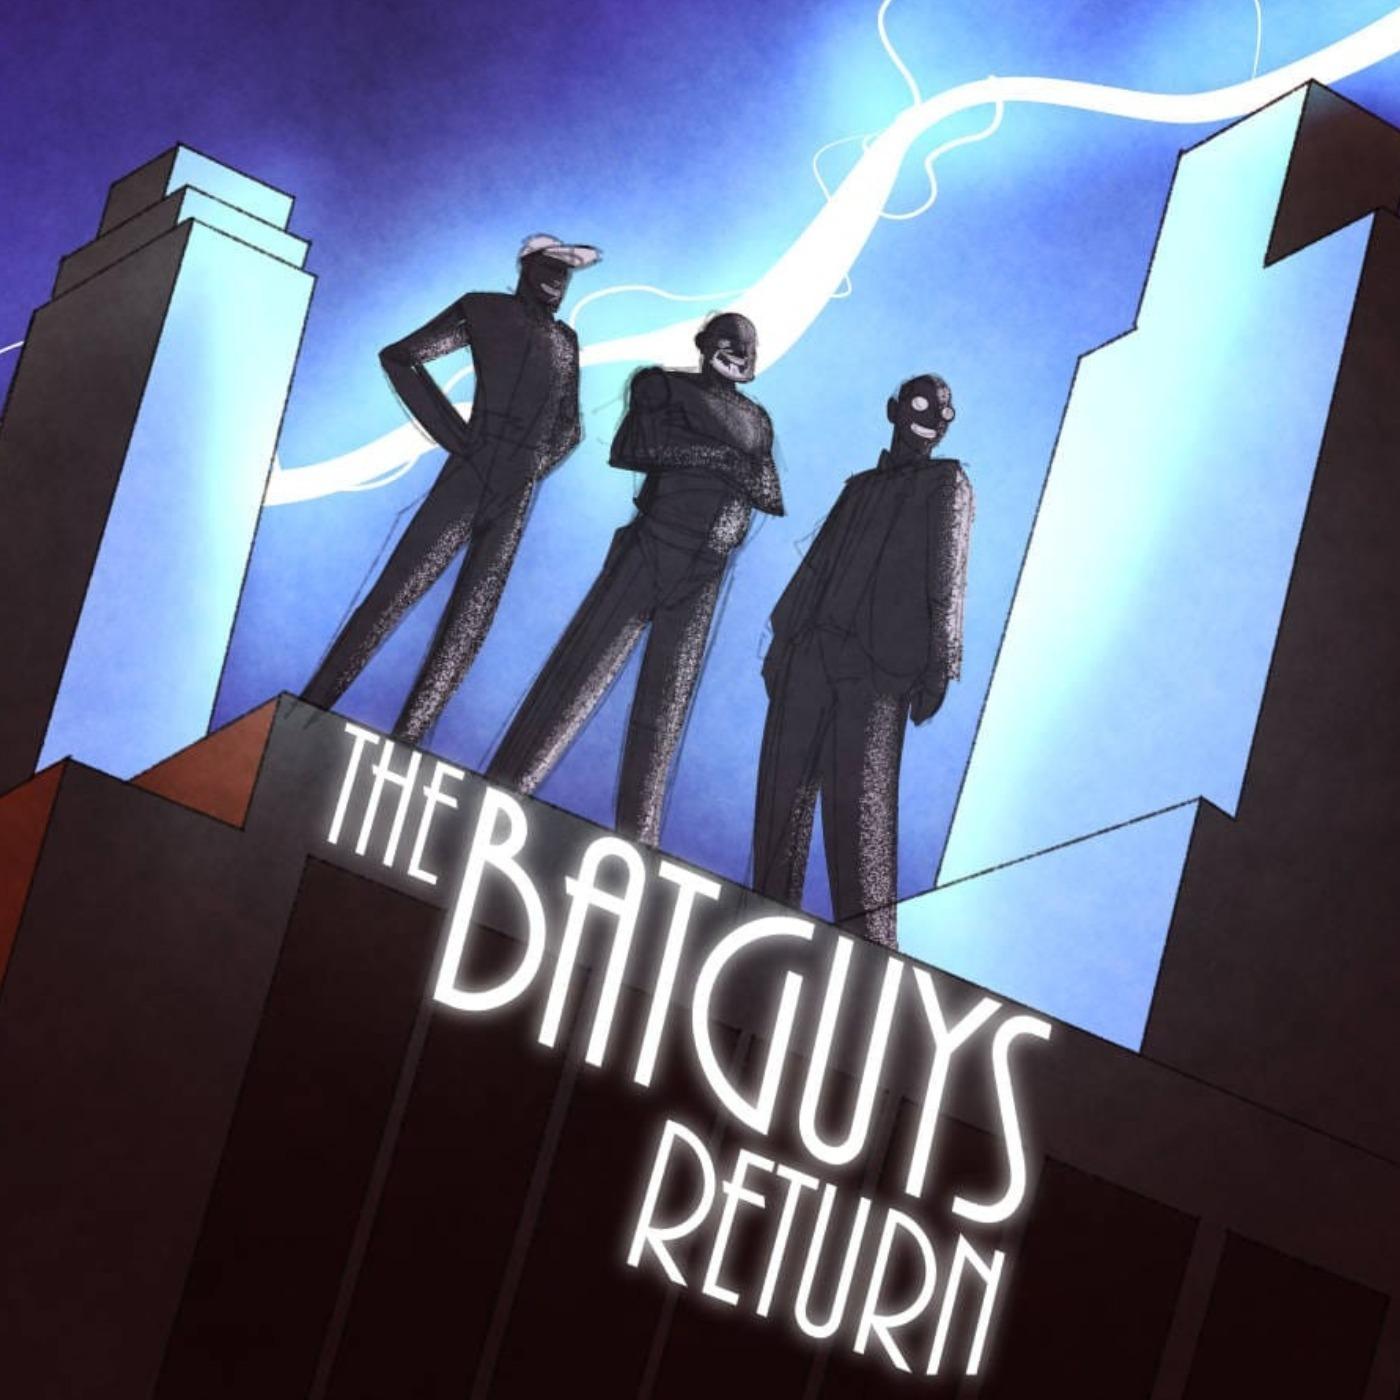 The Batguys Return Podcast